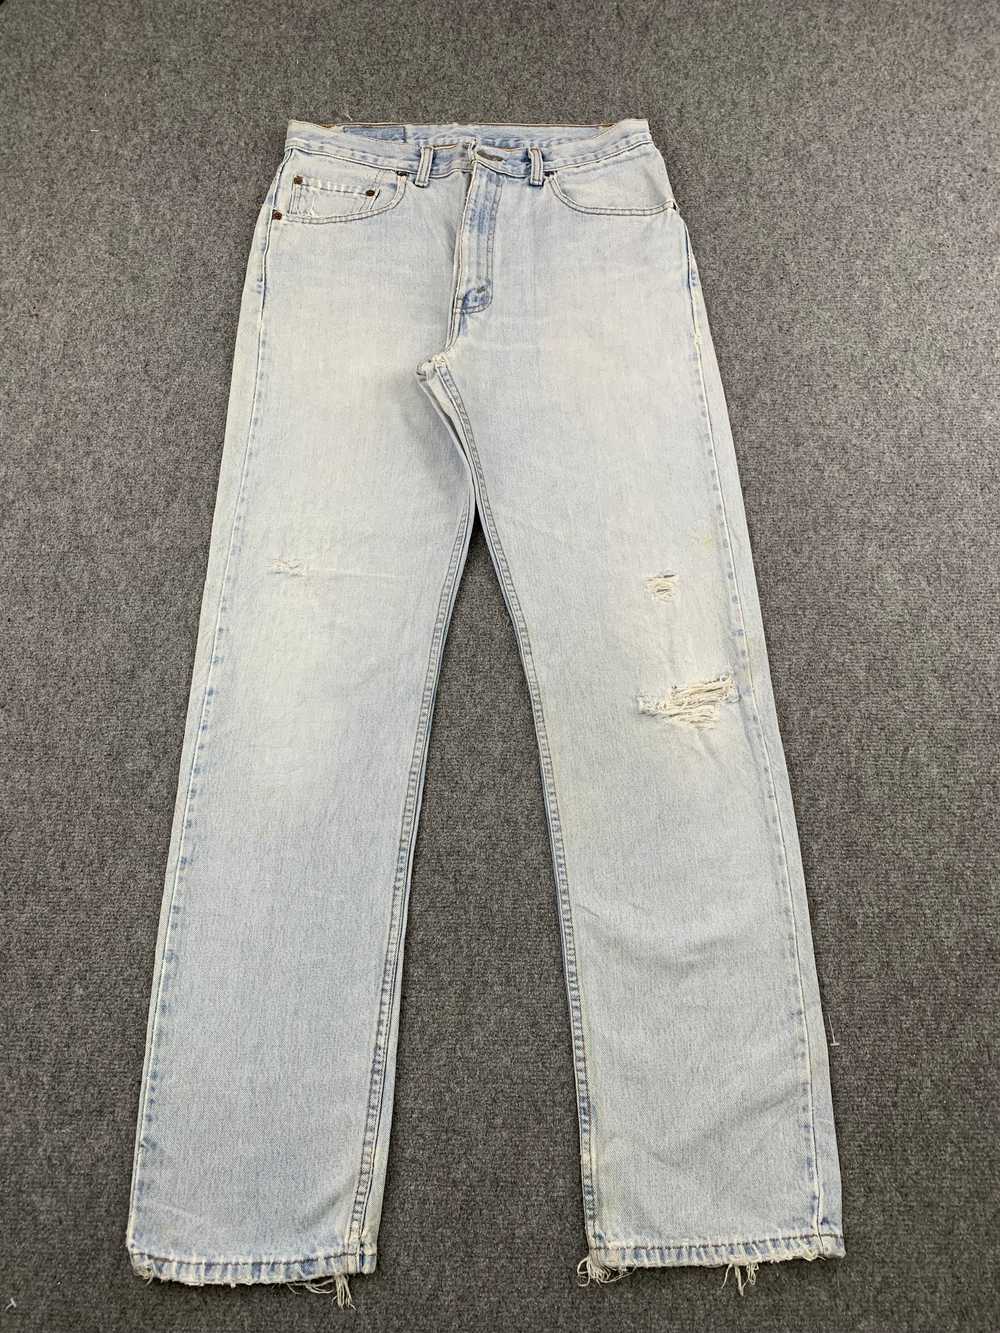 Vintage - Vintage 90s Levis 505 Light Wash Jeans - image 1